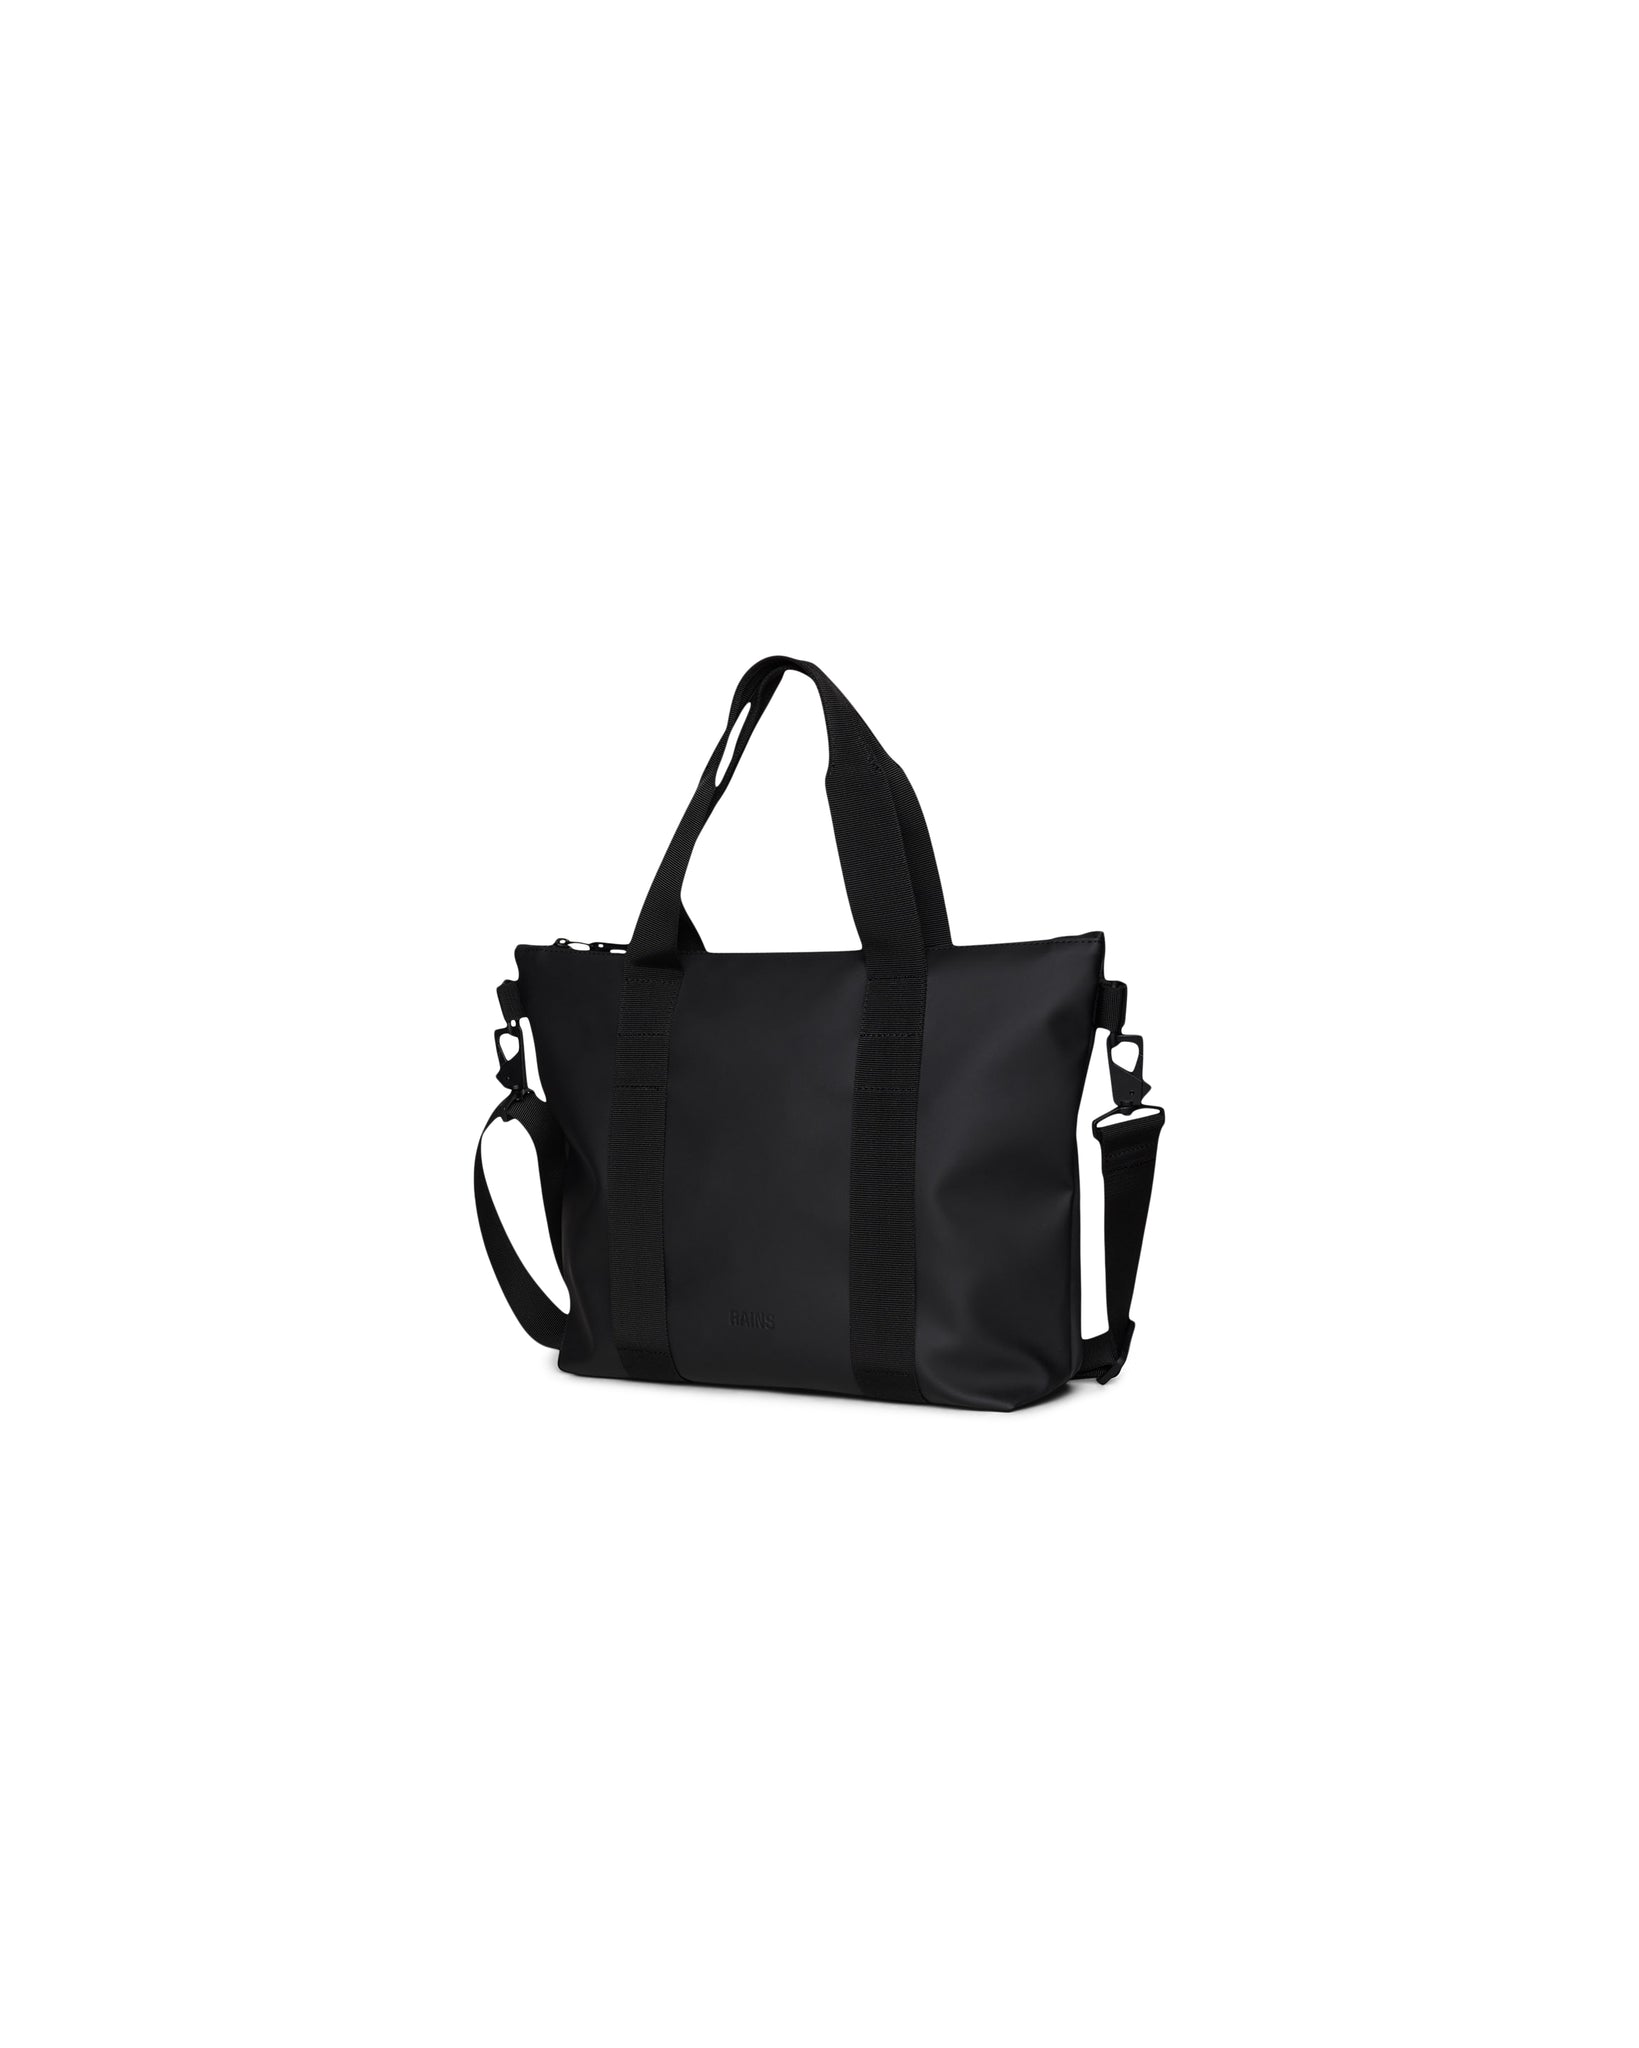 Tote Bag Micro Bag - Black